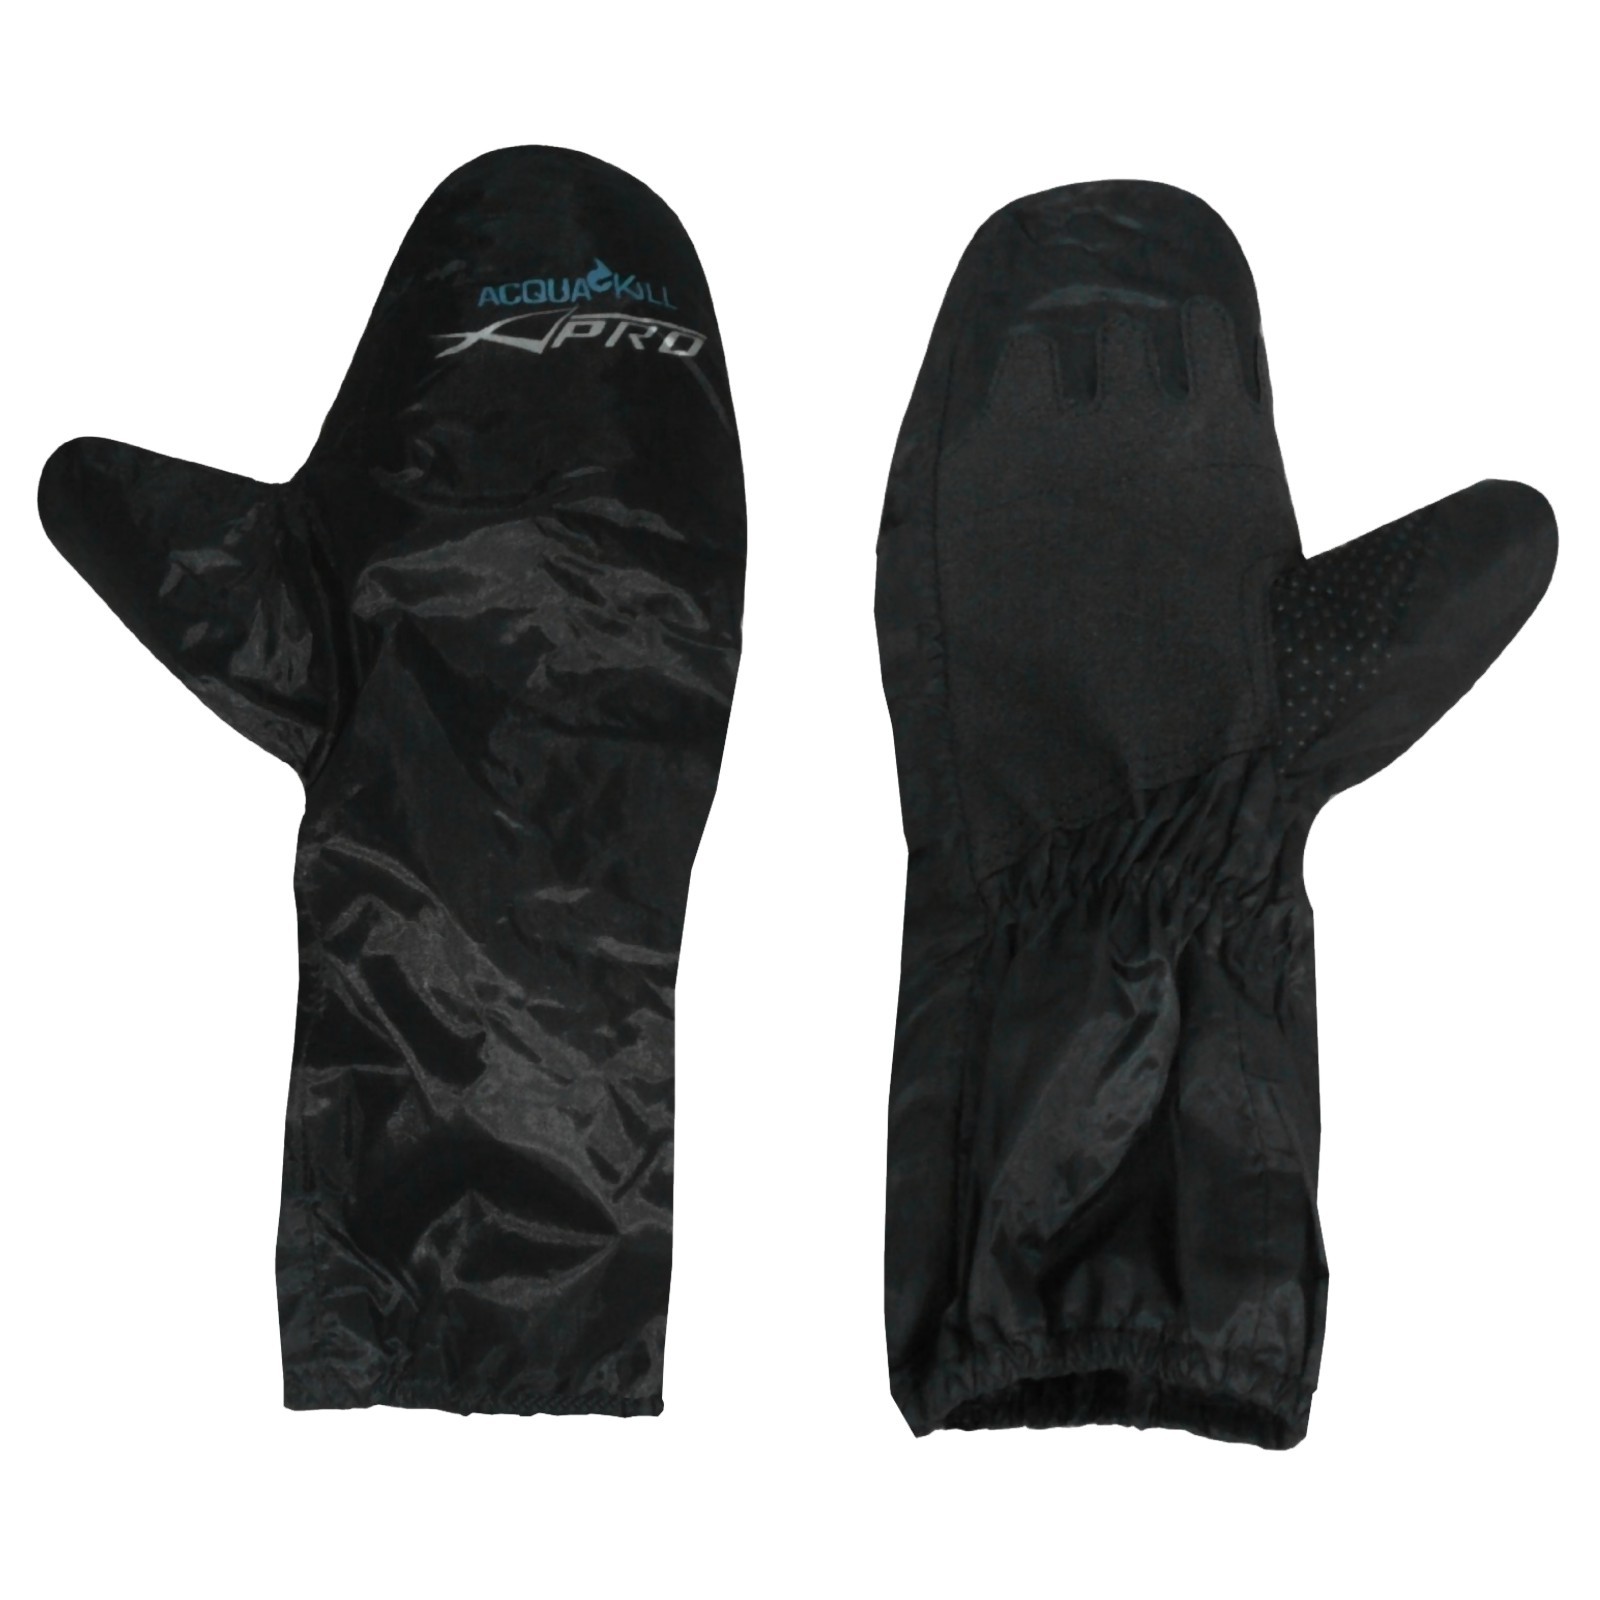 Abbigliamento Moto e Accessori - Anti Pioggia Acqua Impermeabile Tuta  Giacca Pantalone Copri Guanto Stivale Moto